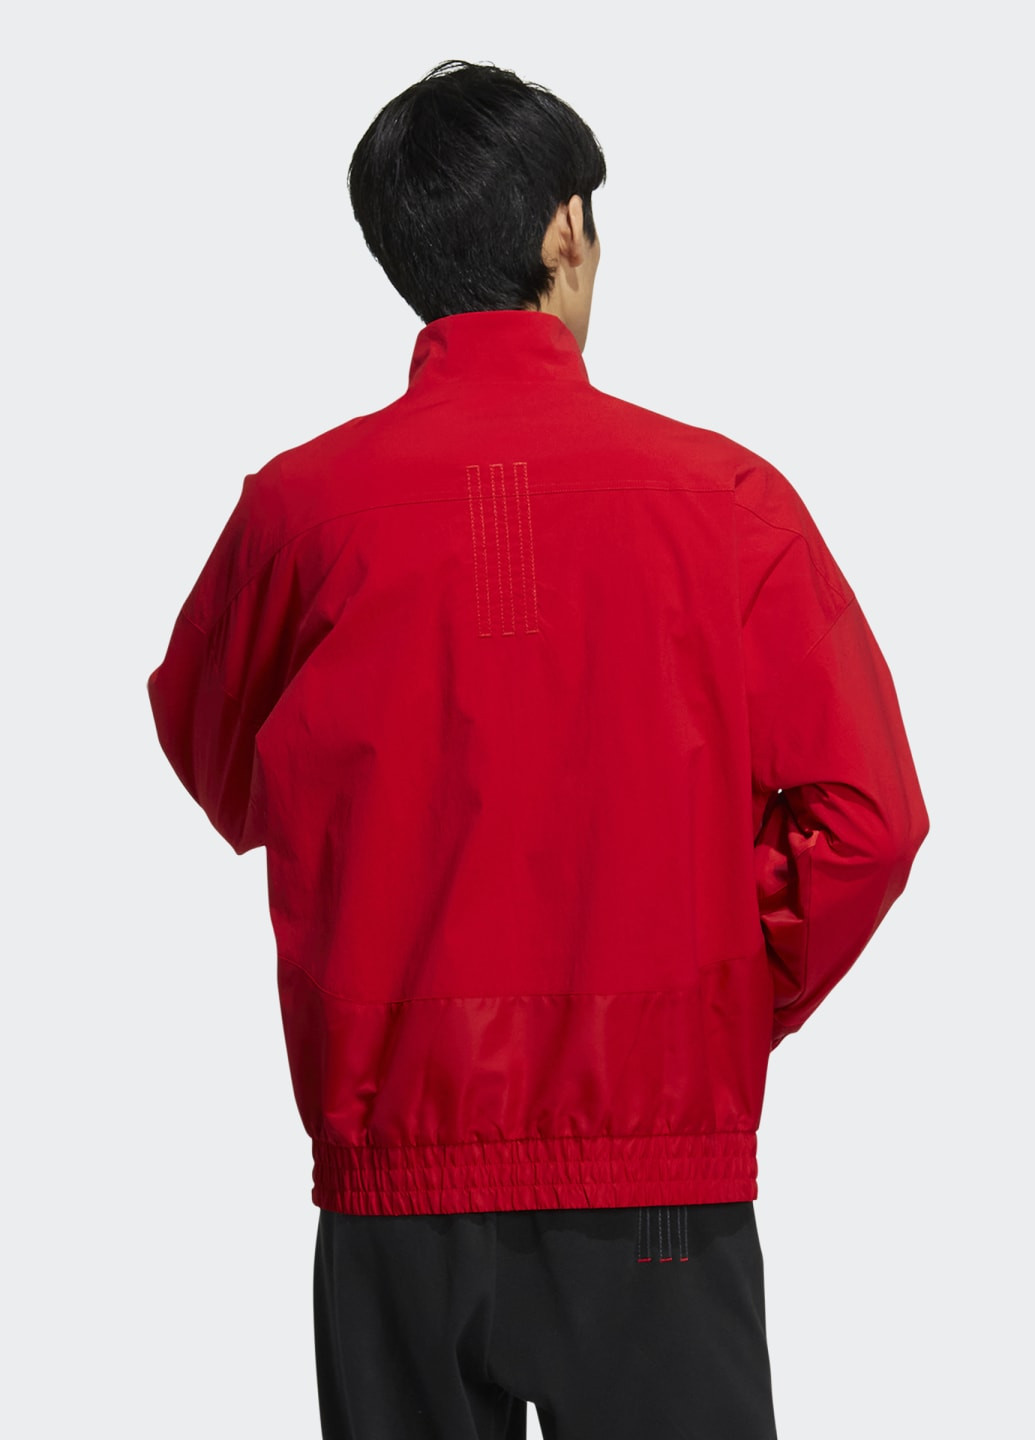 Червона демісезонна куртка cny adidas